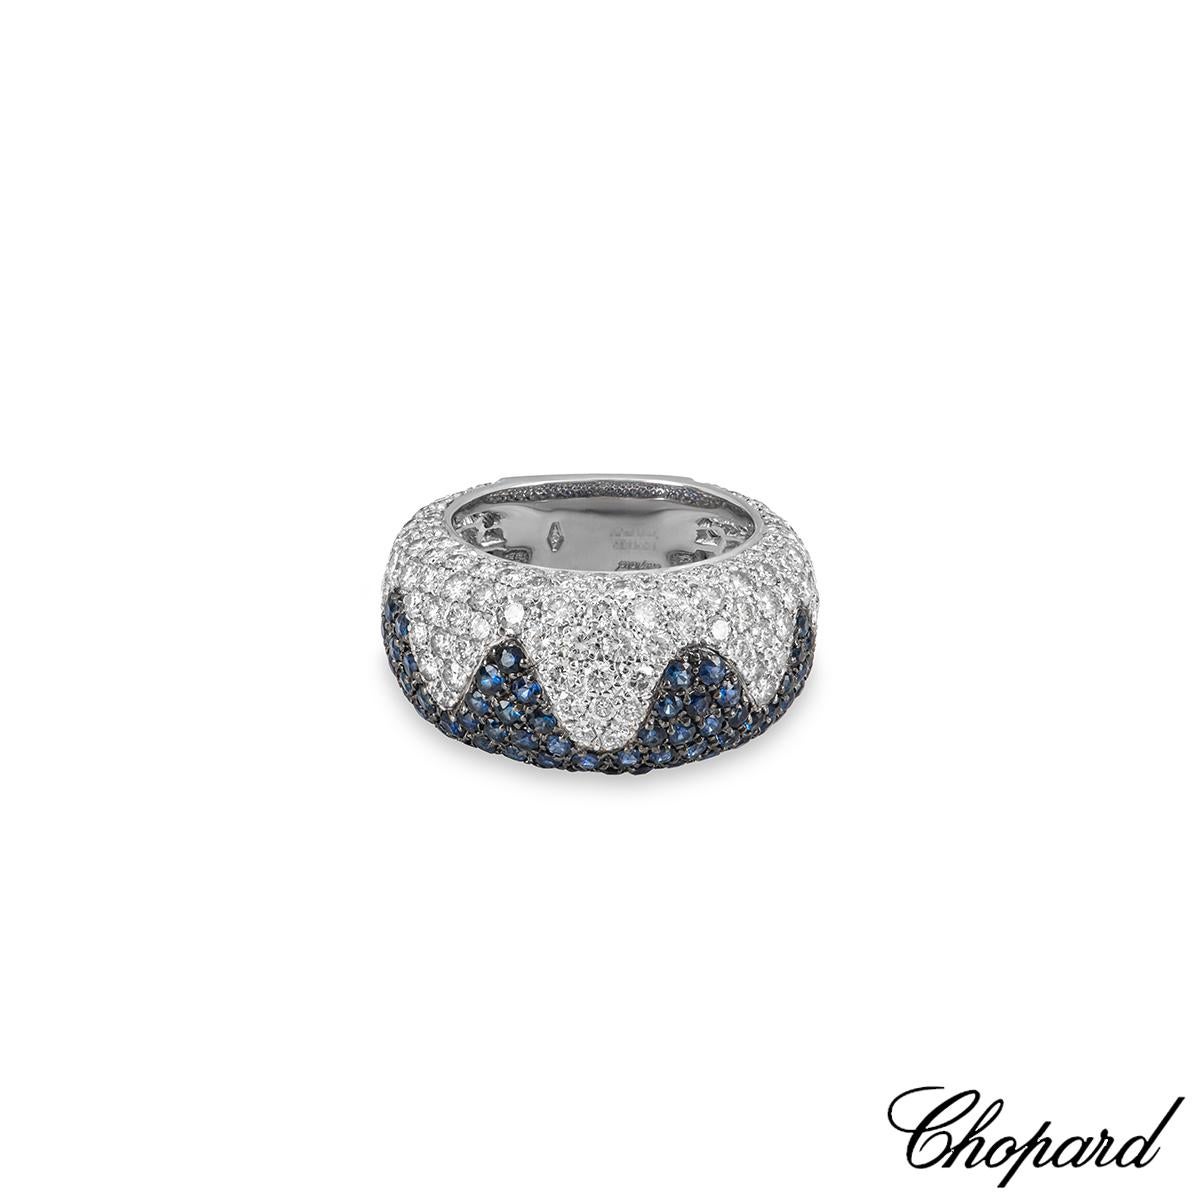 chopard sapphire ring